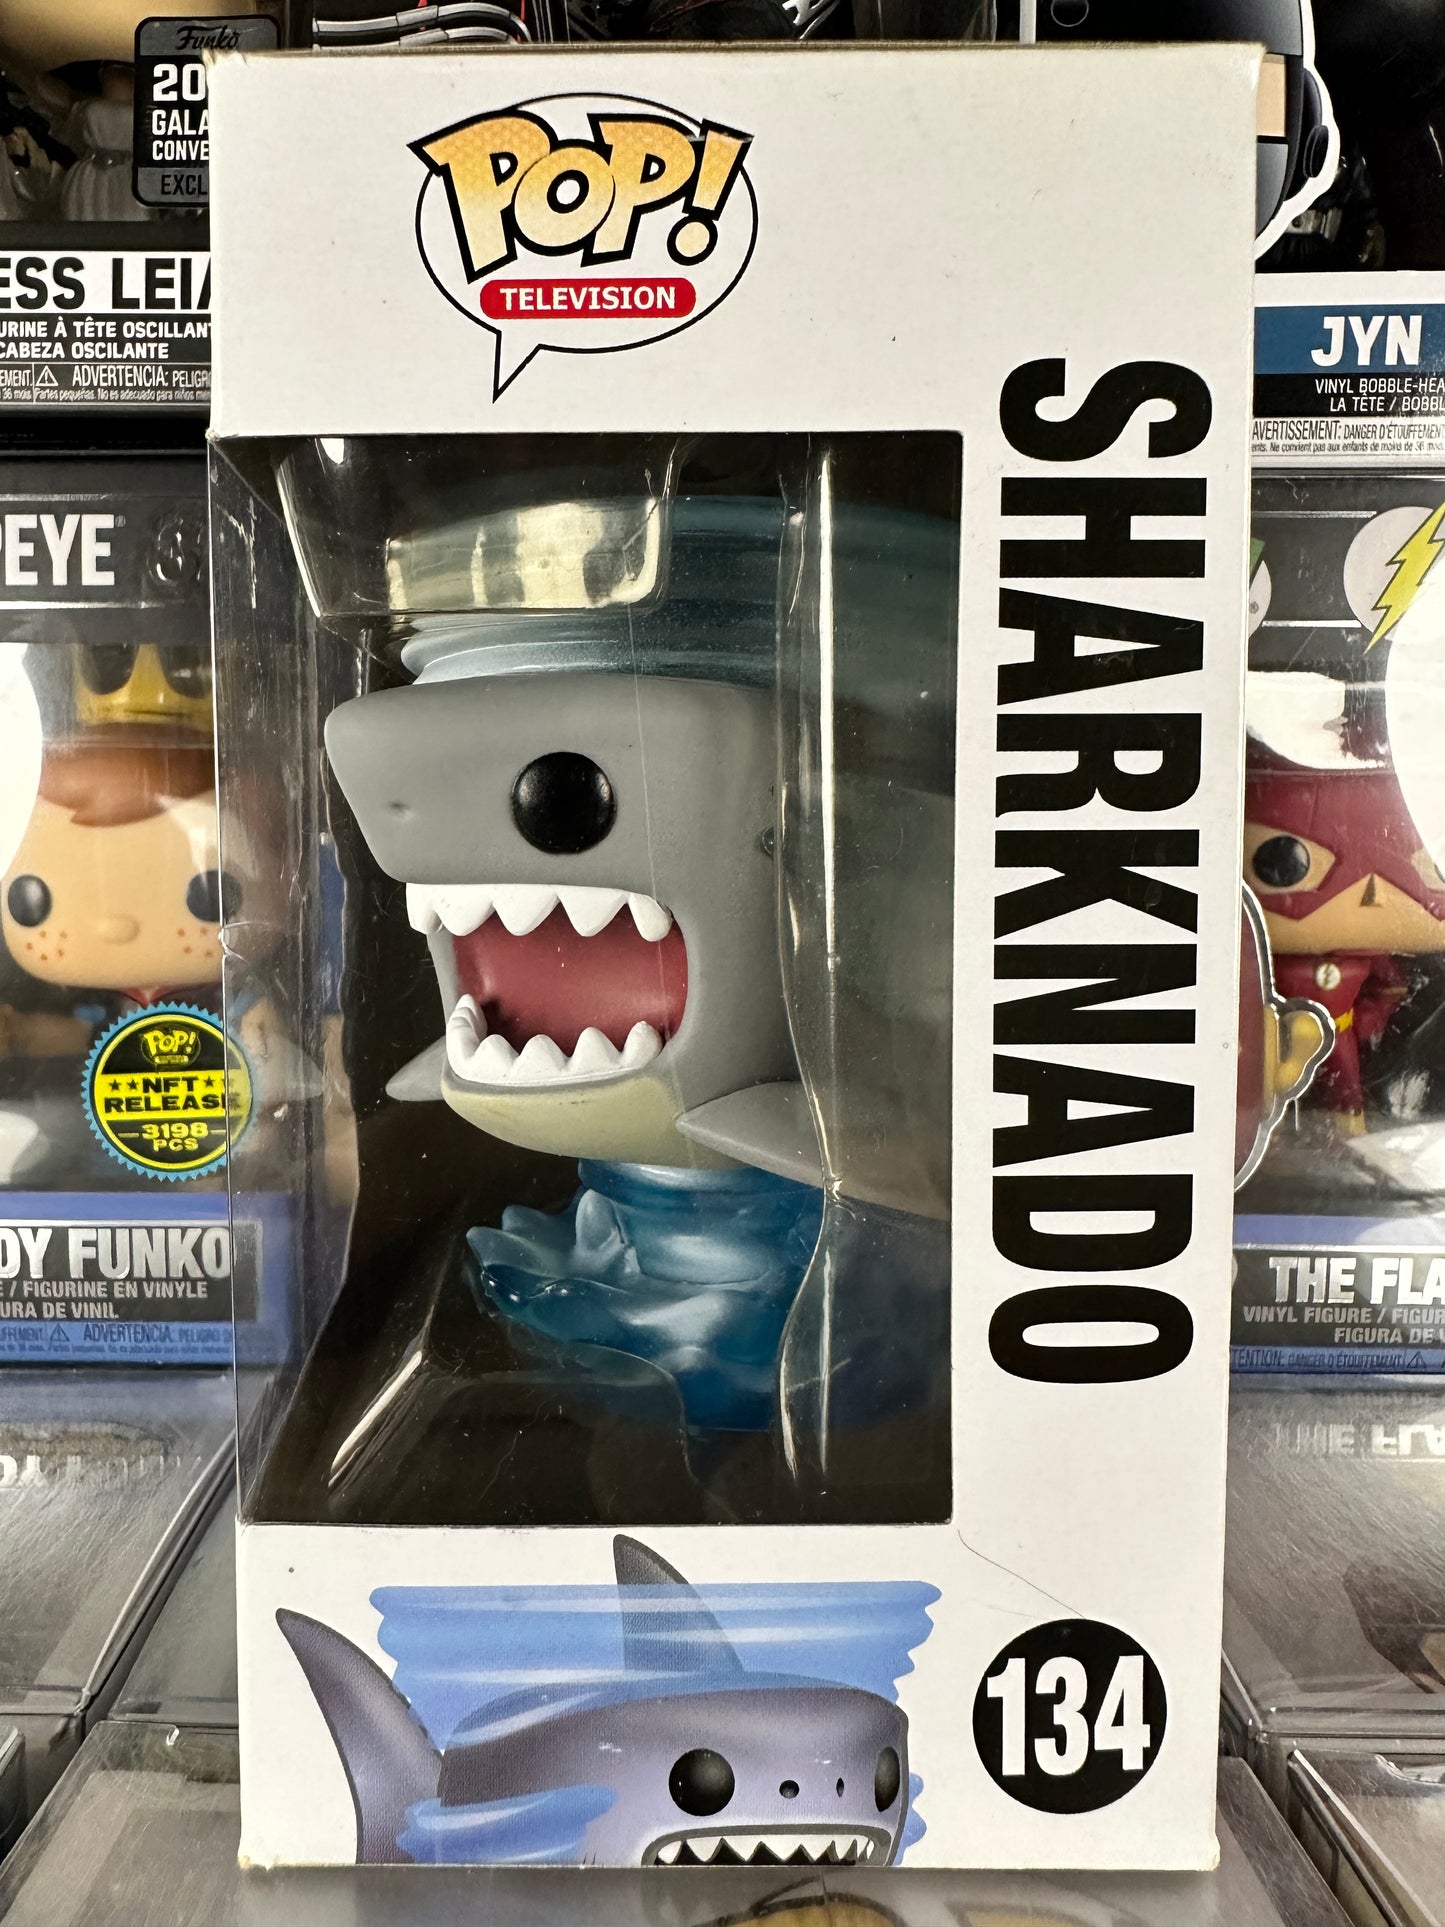 Sharknado - Sharknado (134) Vaulted